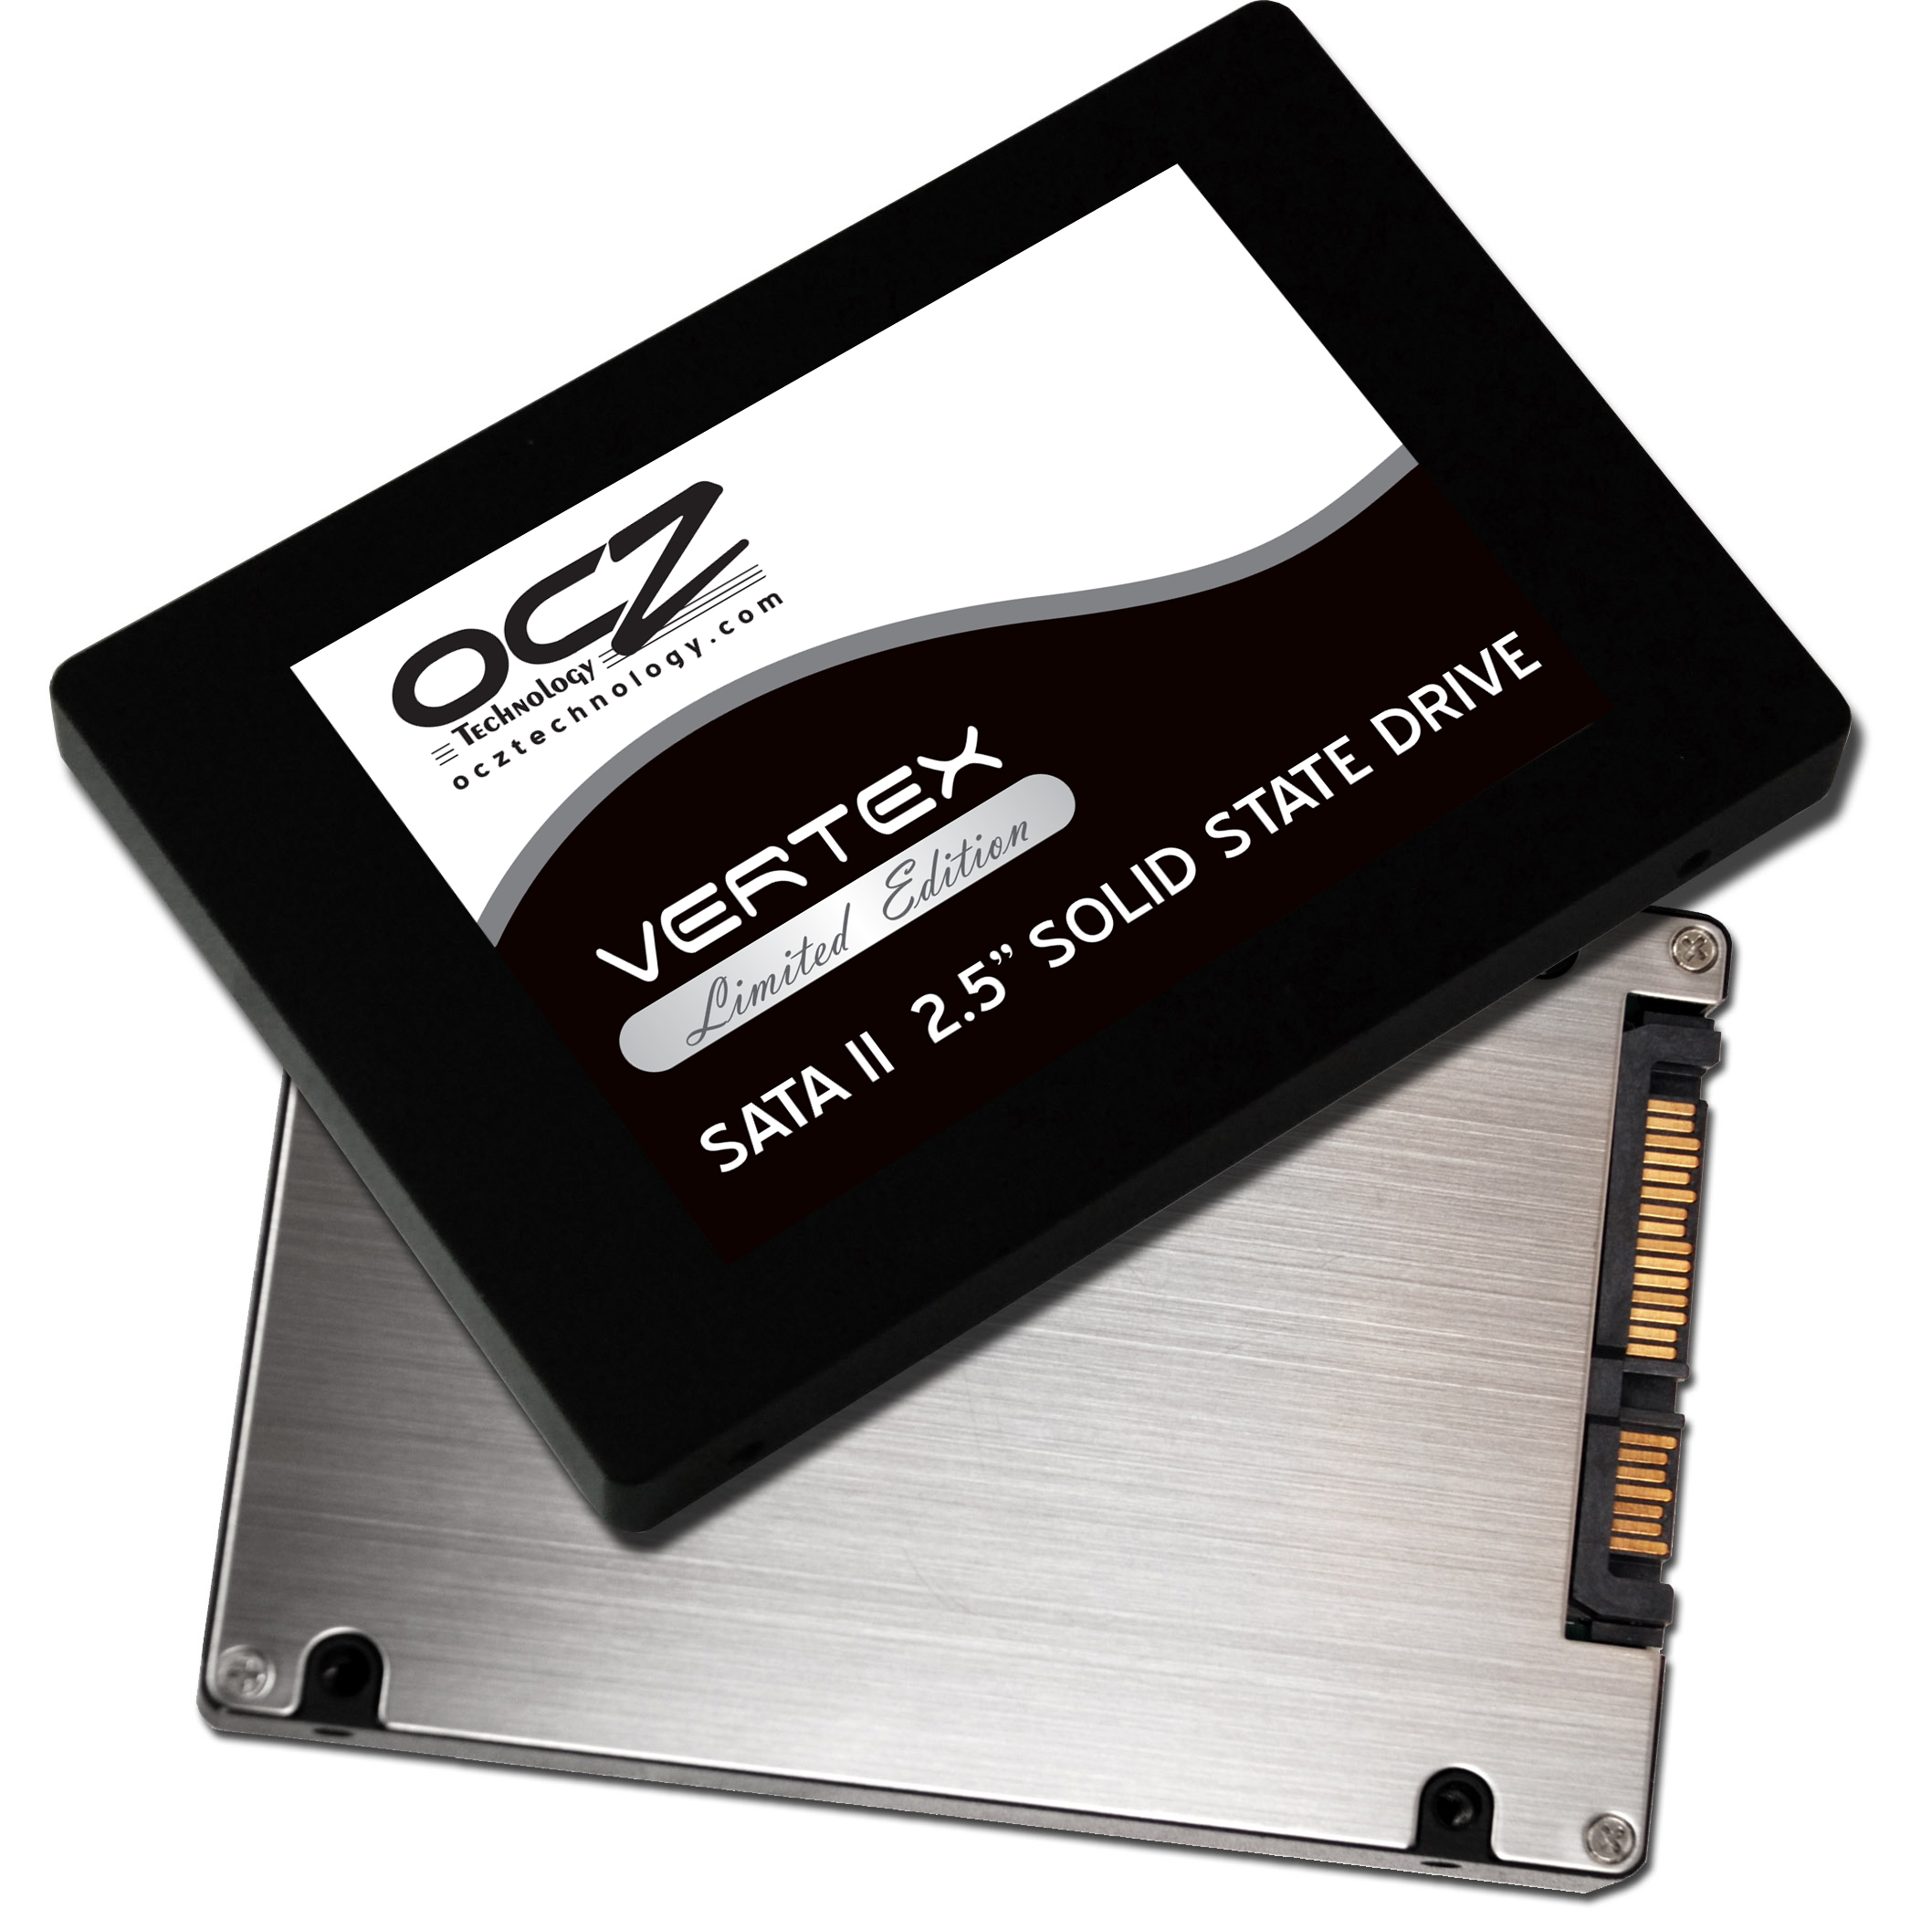 Immagine pubblicata in relazione al seguente contenuto: OCZ annuncia la linea di SSD da 2.5-inch Vertex Limited Edition | Nome immagine: news12548_2.jpg